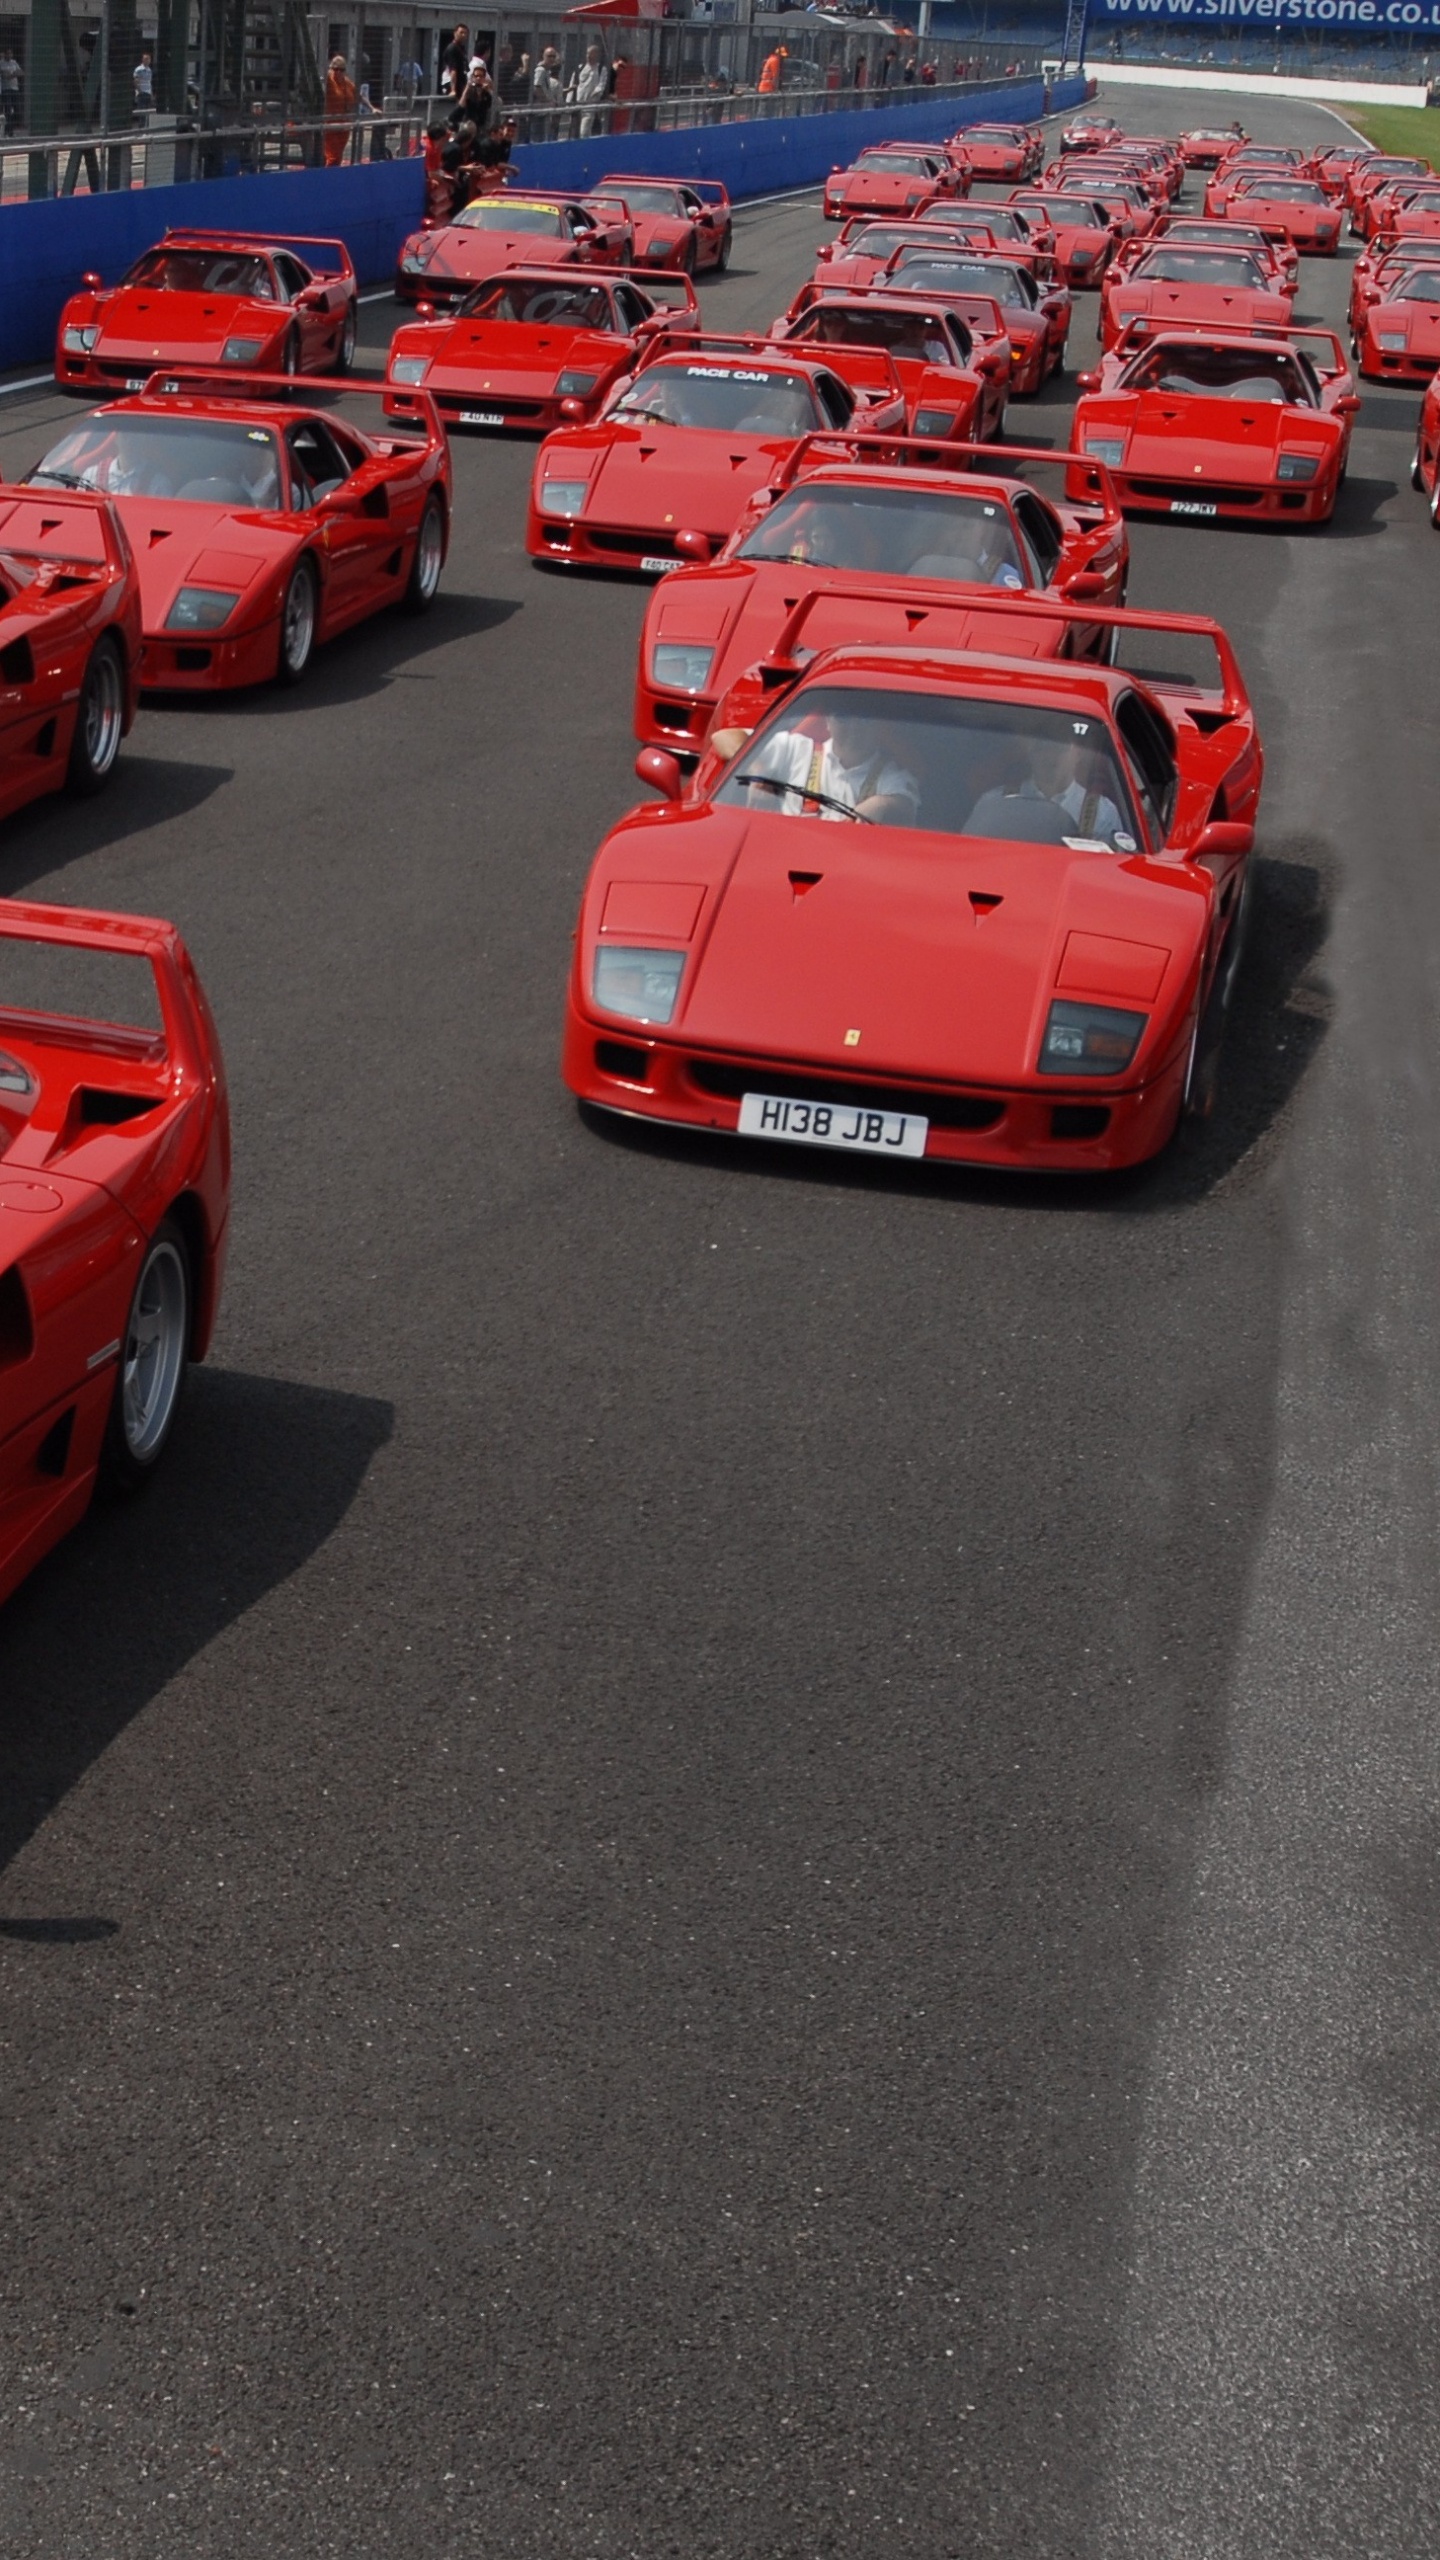 Voiture de Sport Ferrari Rouge Garée Sur un Parking Pendant la Journée. Wallpaper in 1440x2560 Resolution